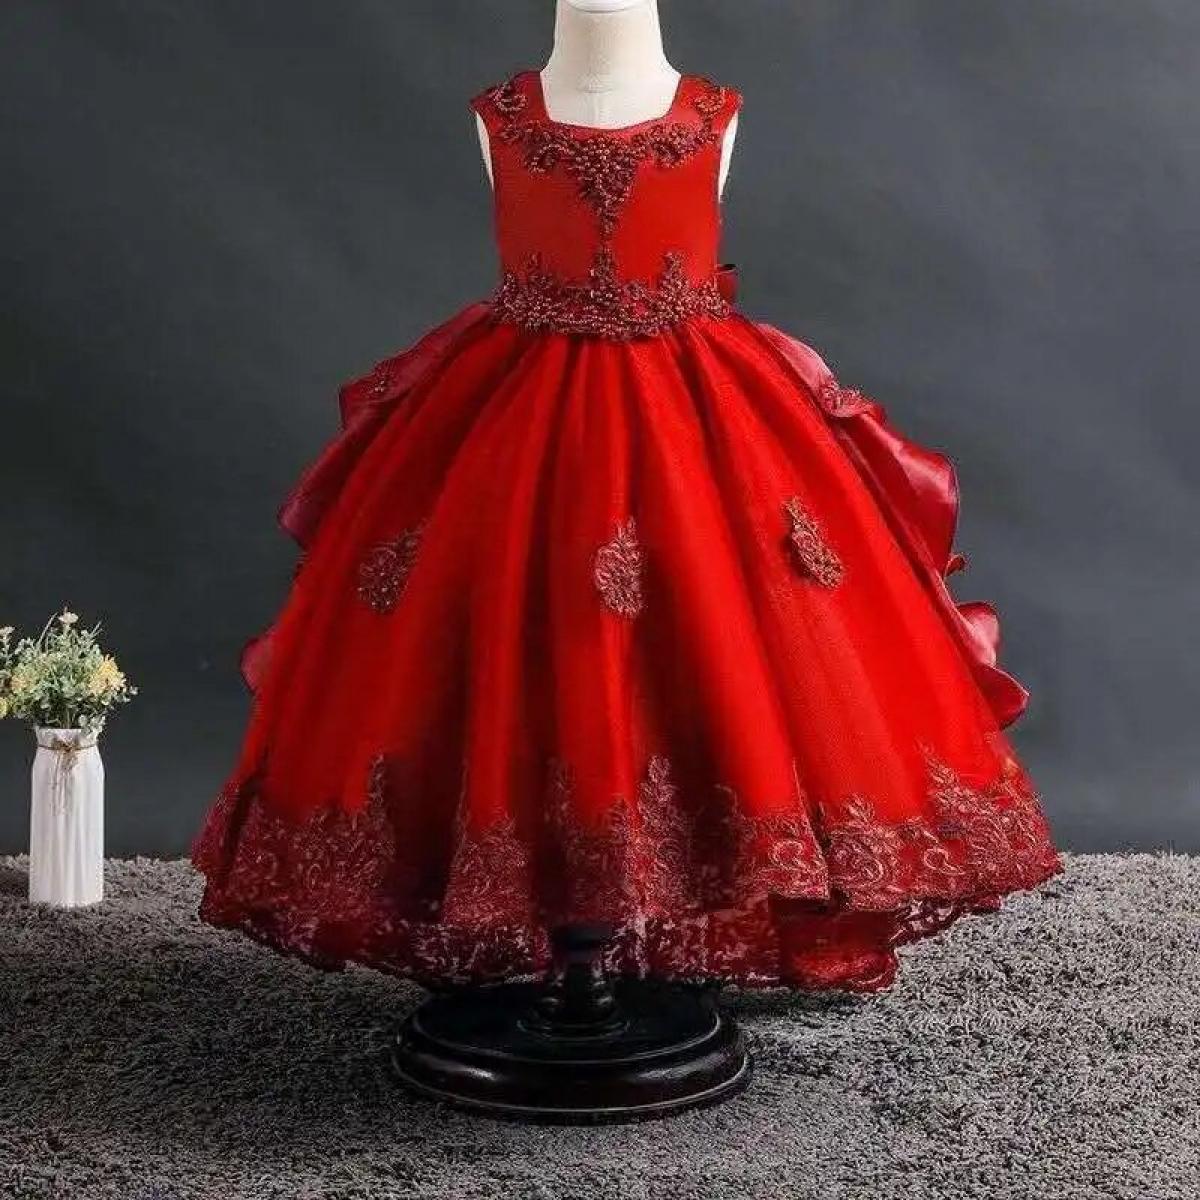 שמלת מסיבת ילדה אלגנטית חדשה שמלת נשף מדהימה שמלה מסיבת סיום גדולה שמלה קולקטיבית 4 נסיכי ליל כל הקדושים בני 12